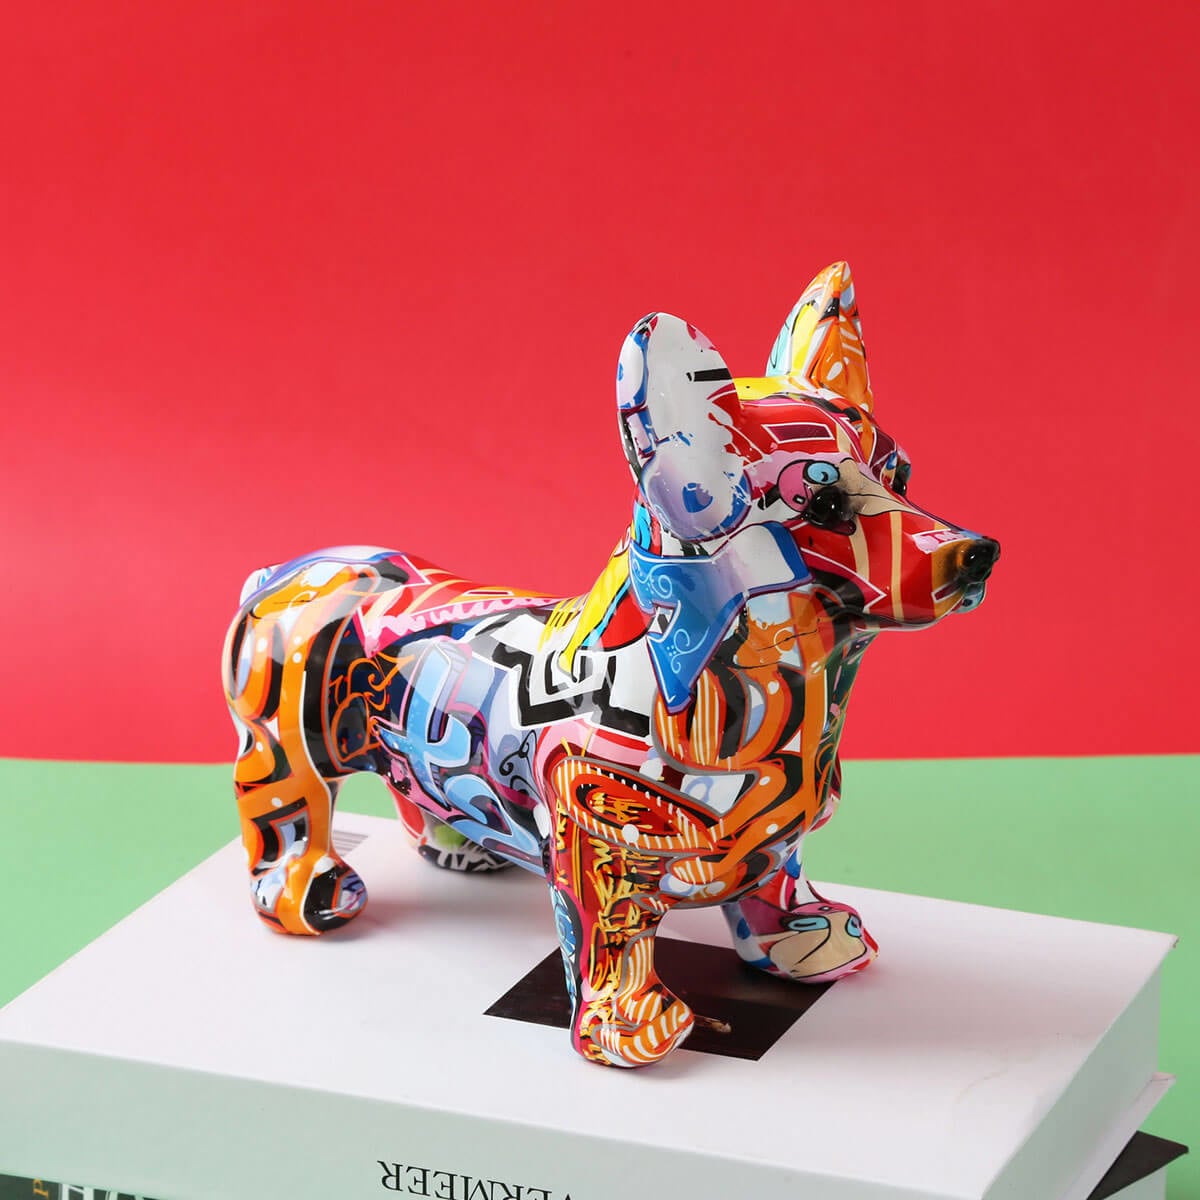 コーギー犬の像カラフルなグラフィティアートの彫刻